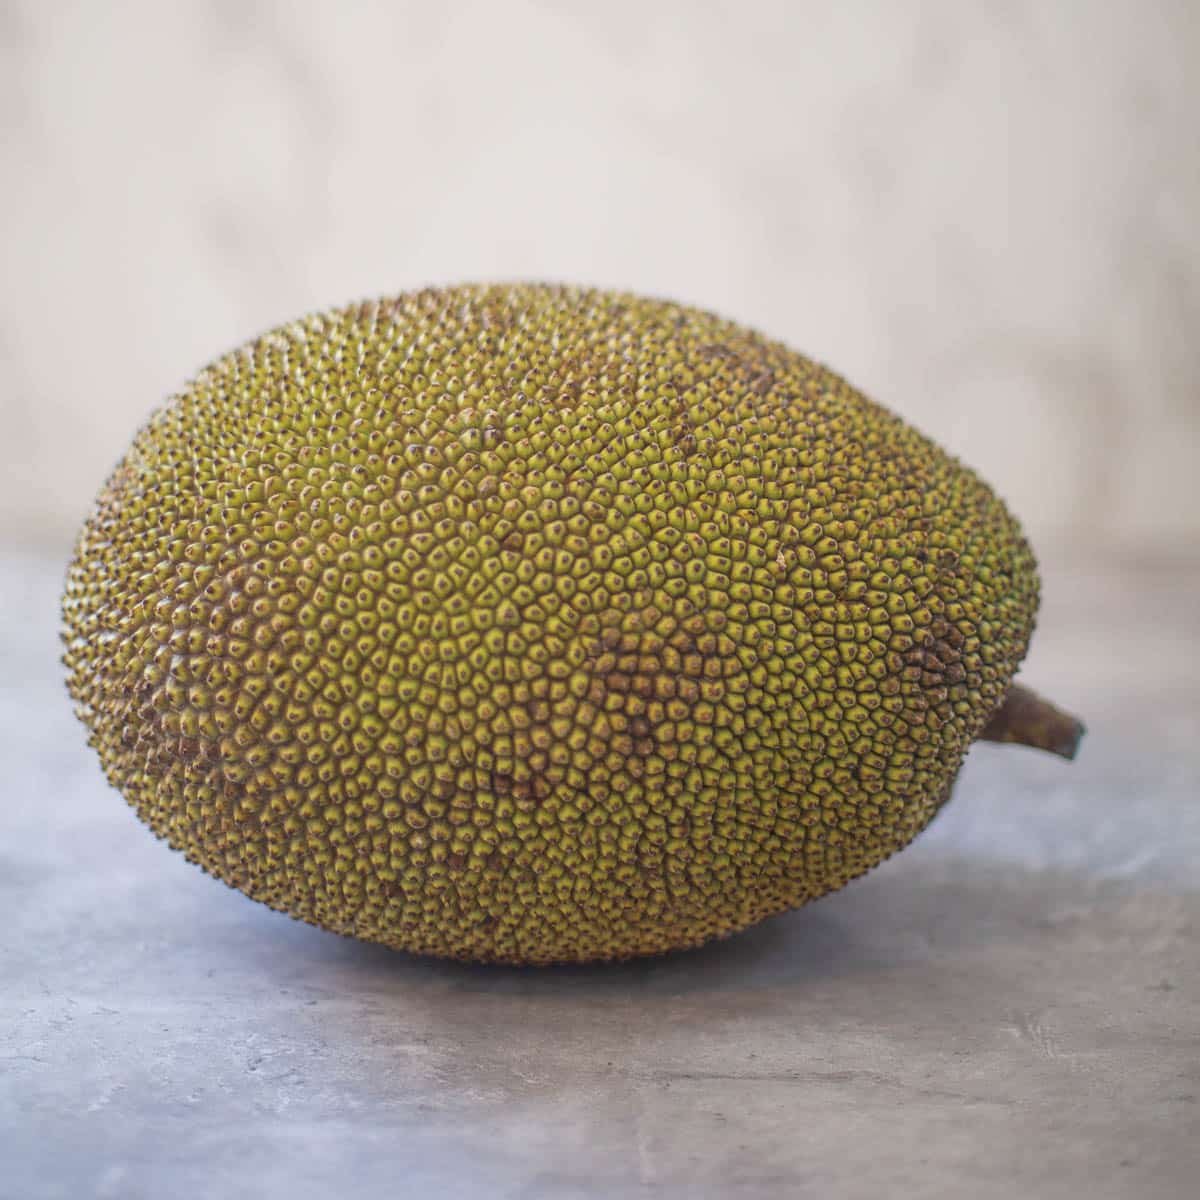 spiky green exterior of a jackfruit